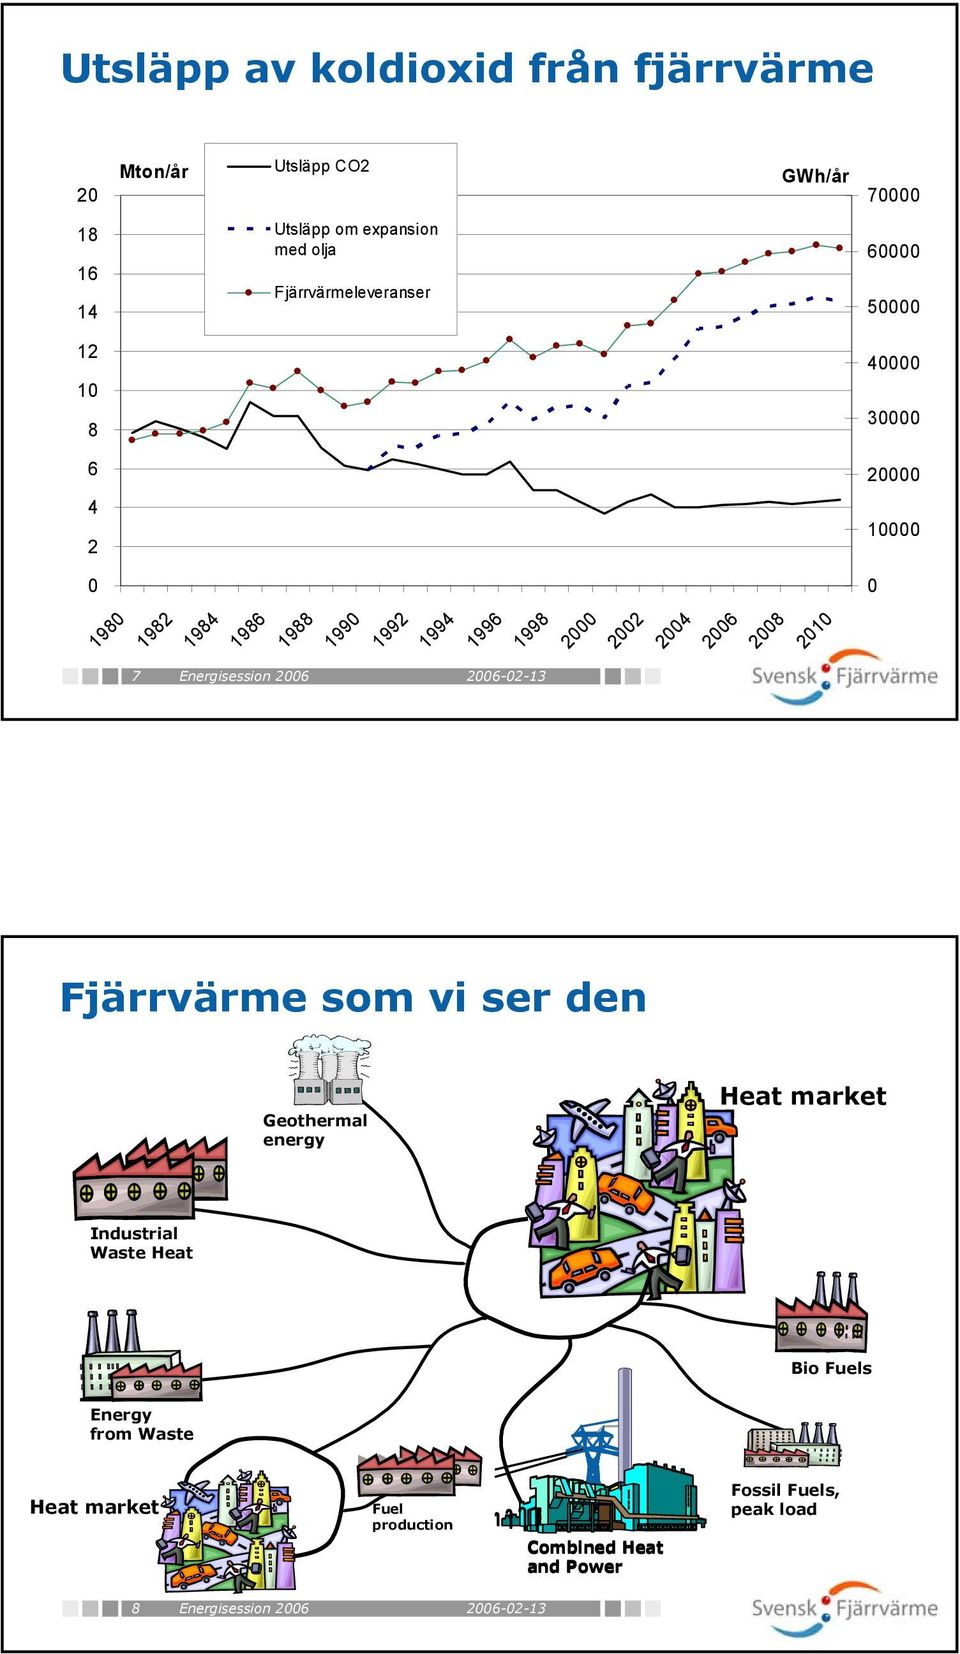 199 1992 1994 1996 1998 2 22 24 26 28 21 7 Energisession 26 Fjärrvärme som vi ser den Geothermal energy Heat market Industrial